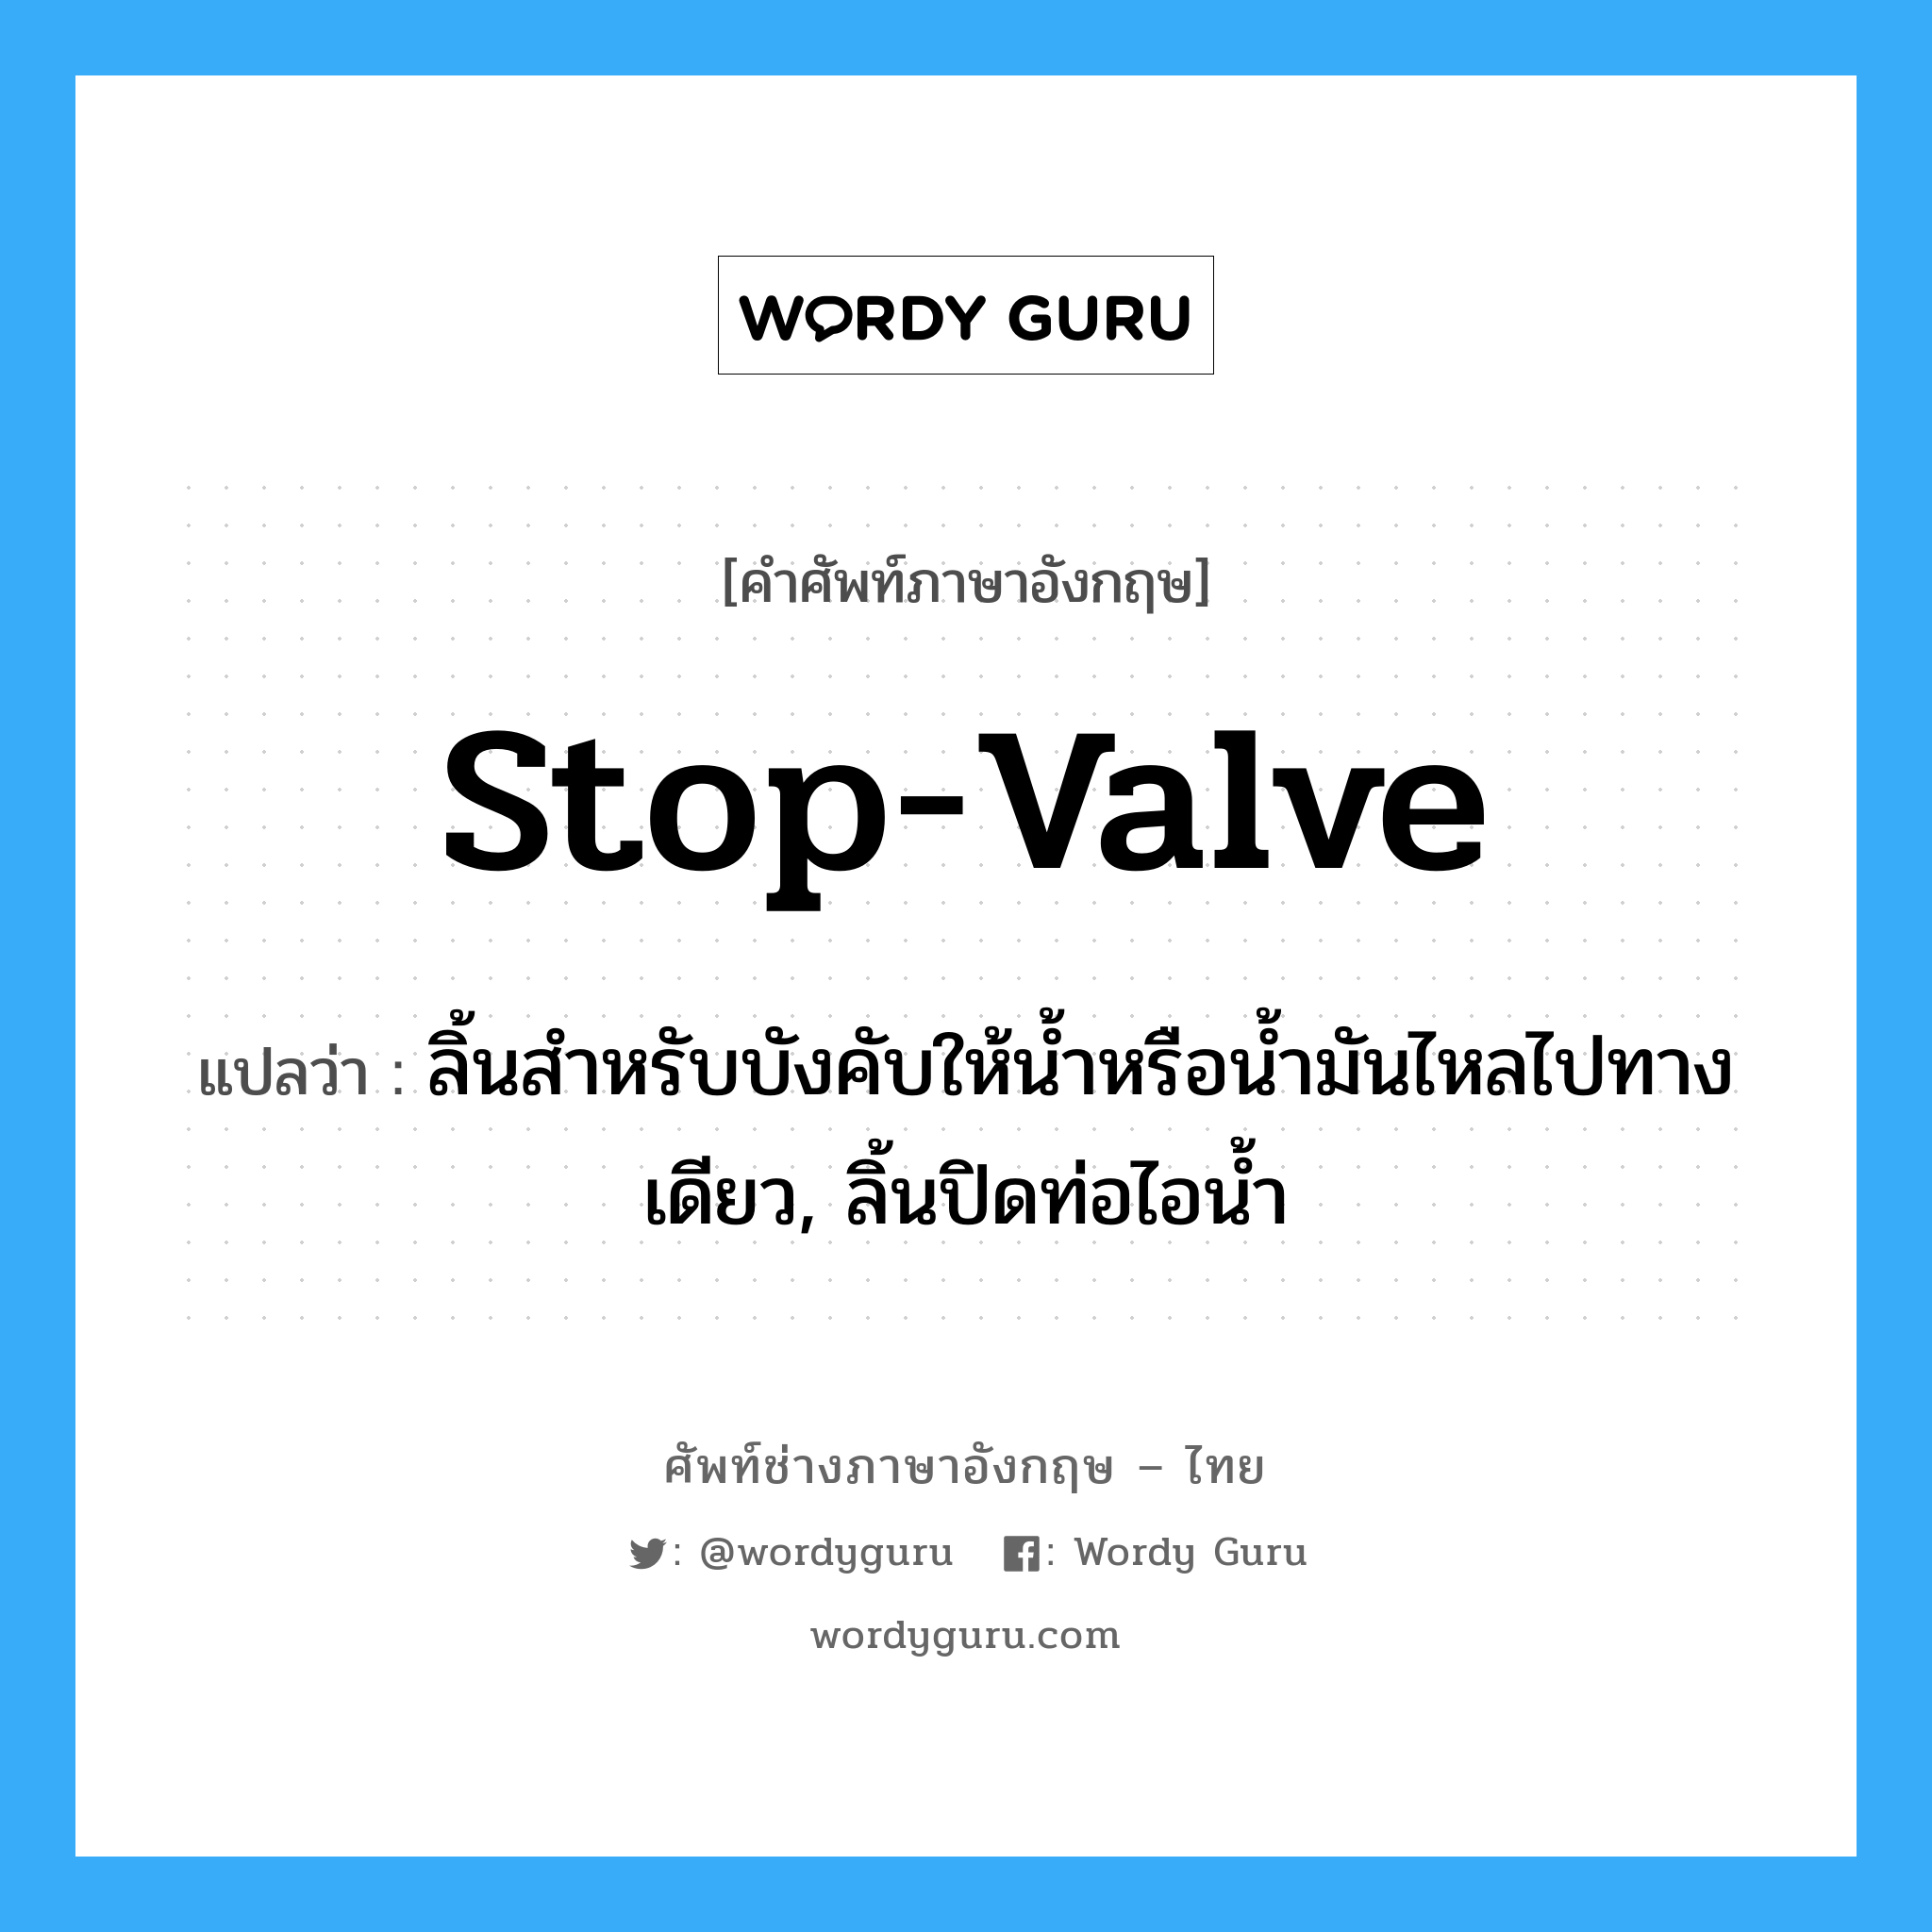 stop-valve แปลว่า?, คำศัพท์ช่างภาษาอังกฤษ - ไทย stop-valve คำศัพท์ภาษาอังกฤษ stop-valve แปลว่า ลิ้นสำหรับบังคับให้น้ำหรือน้ำมันไหลไปทางเดียว, ลิ้นปิดท่อไอน้ำ